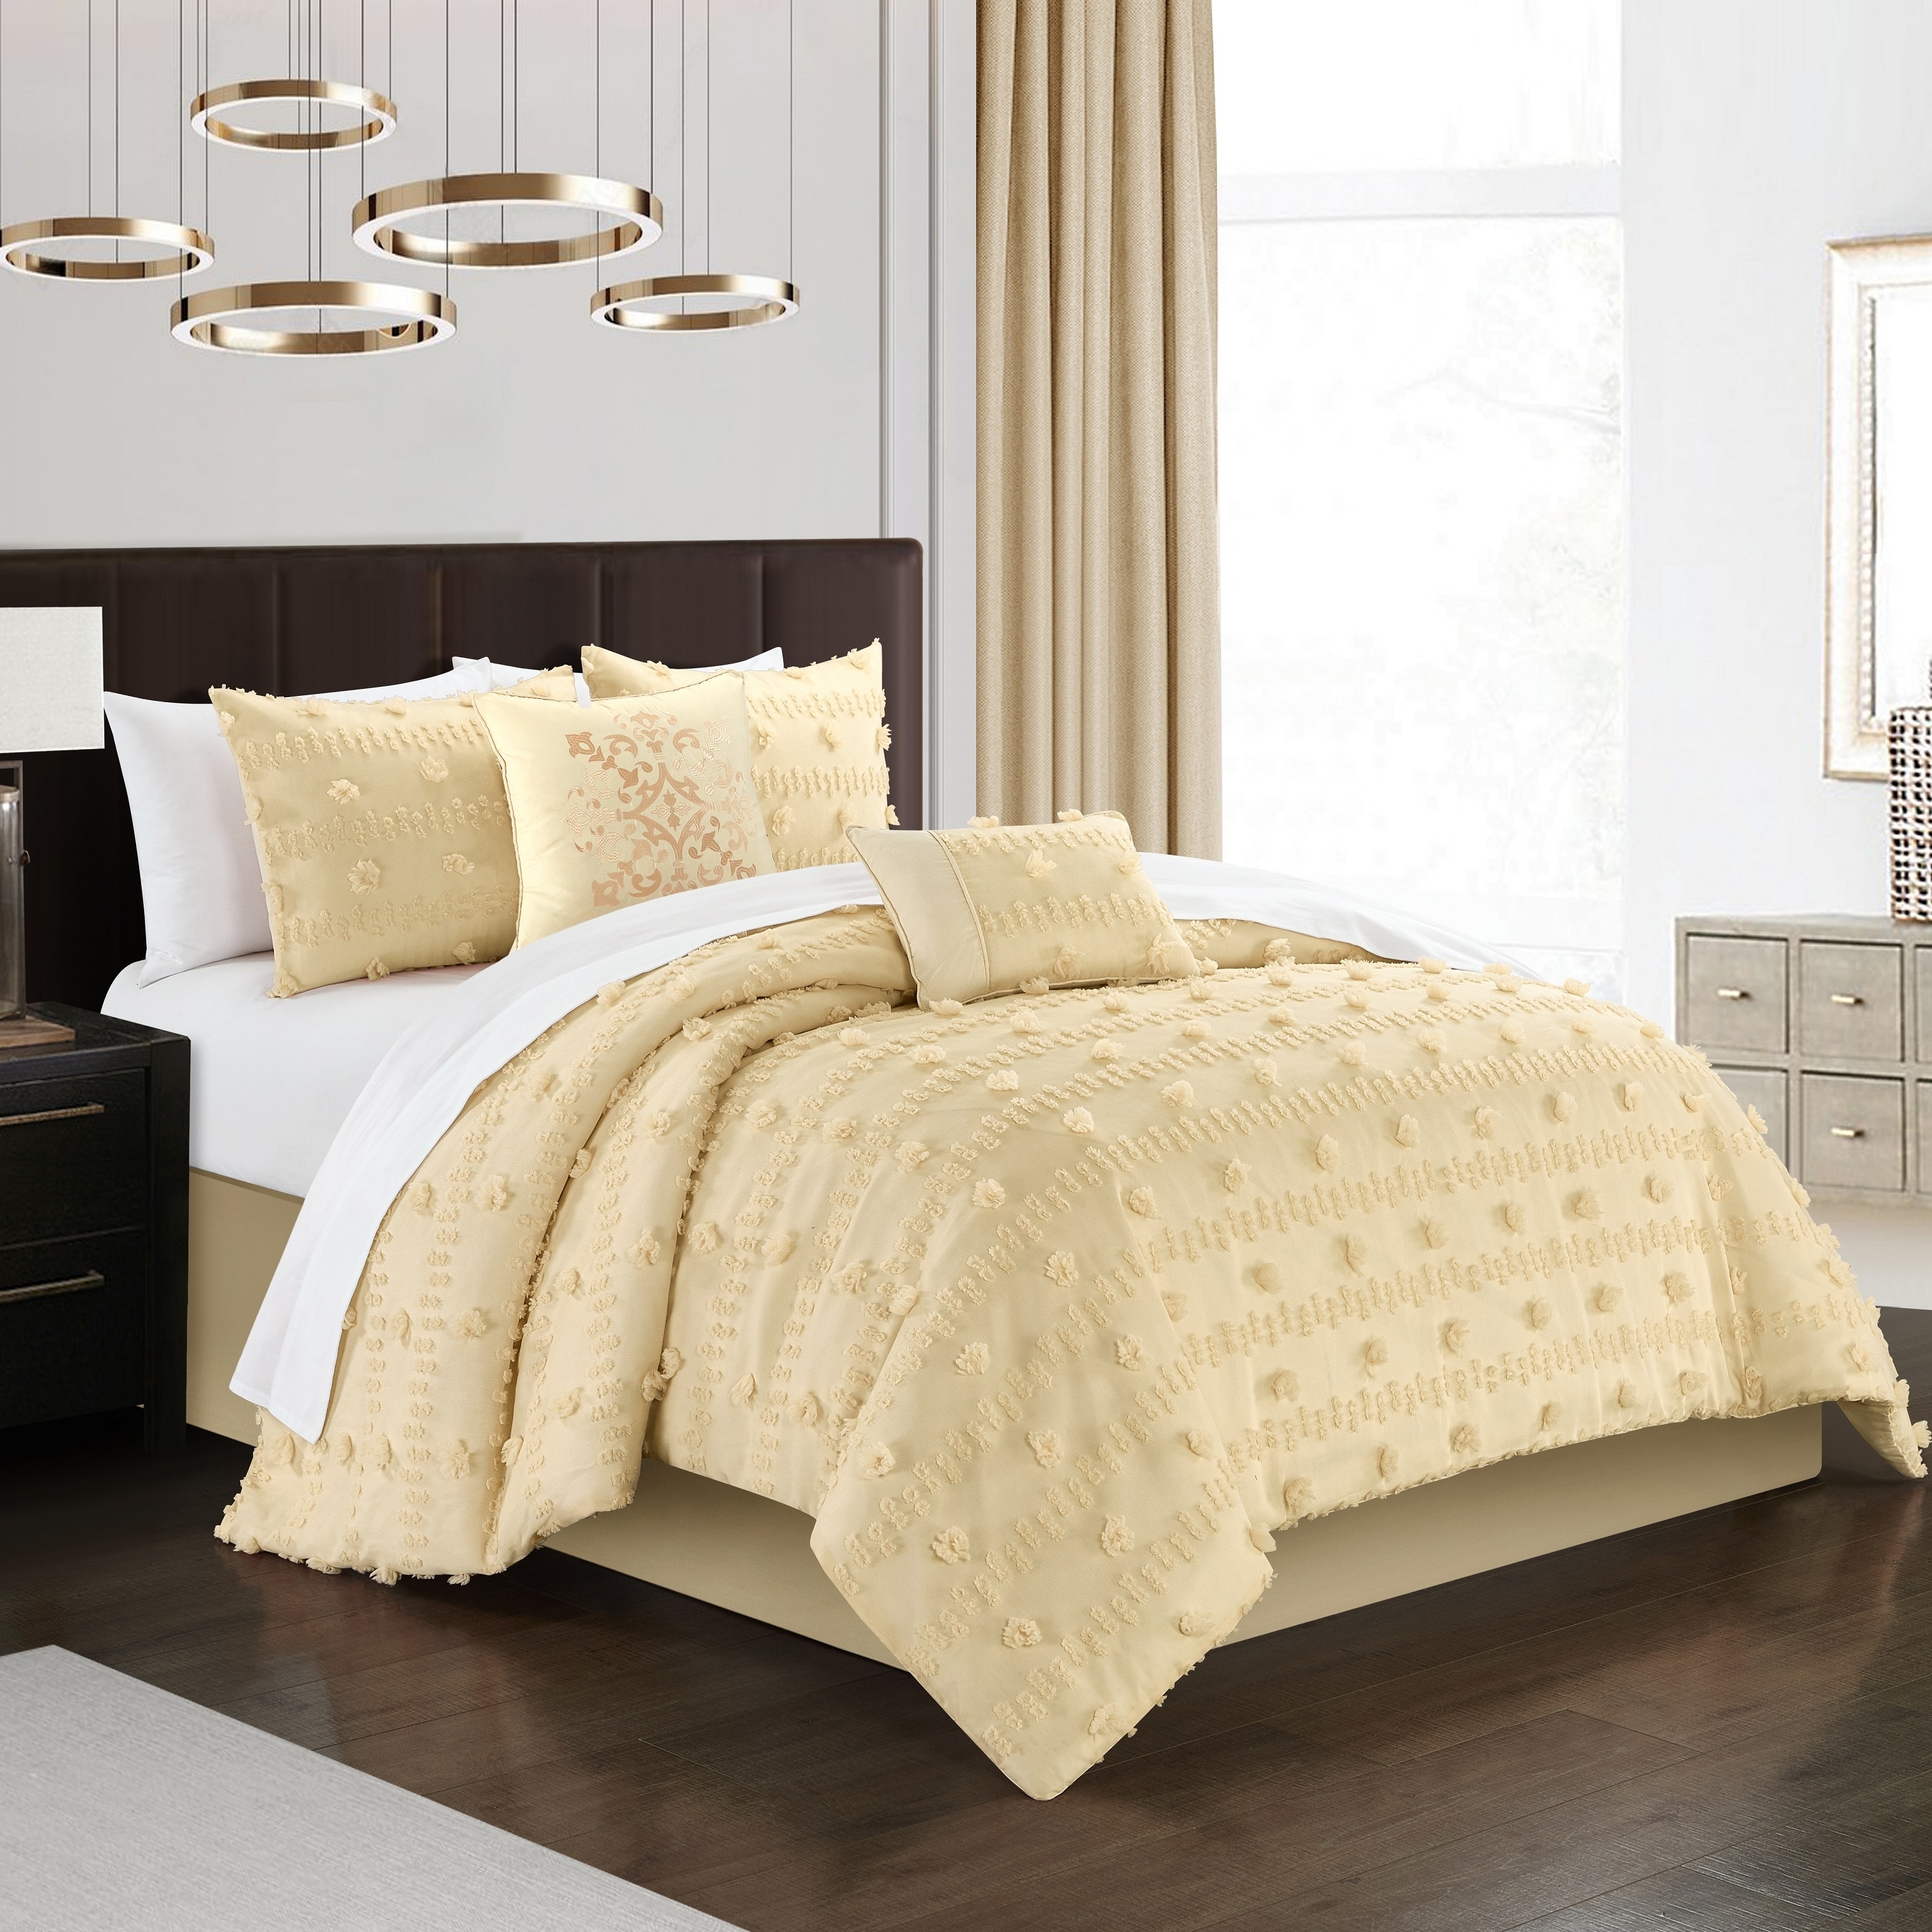 Ahtisa 5 Piece Comforter Set Jacquard Floral Applique Design Bedding - Sand, King